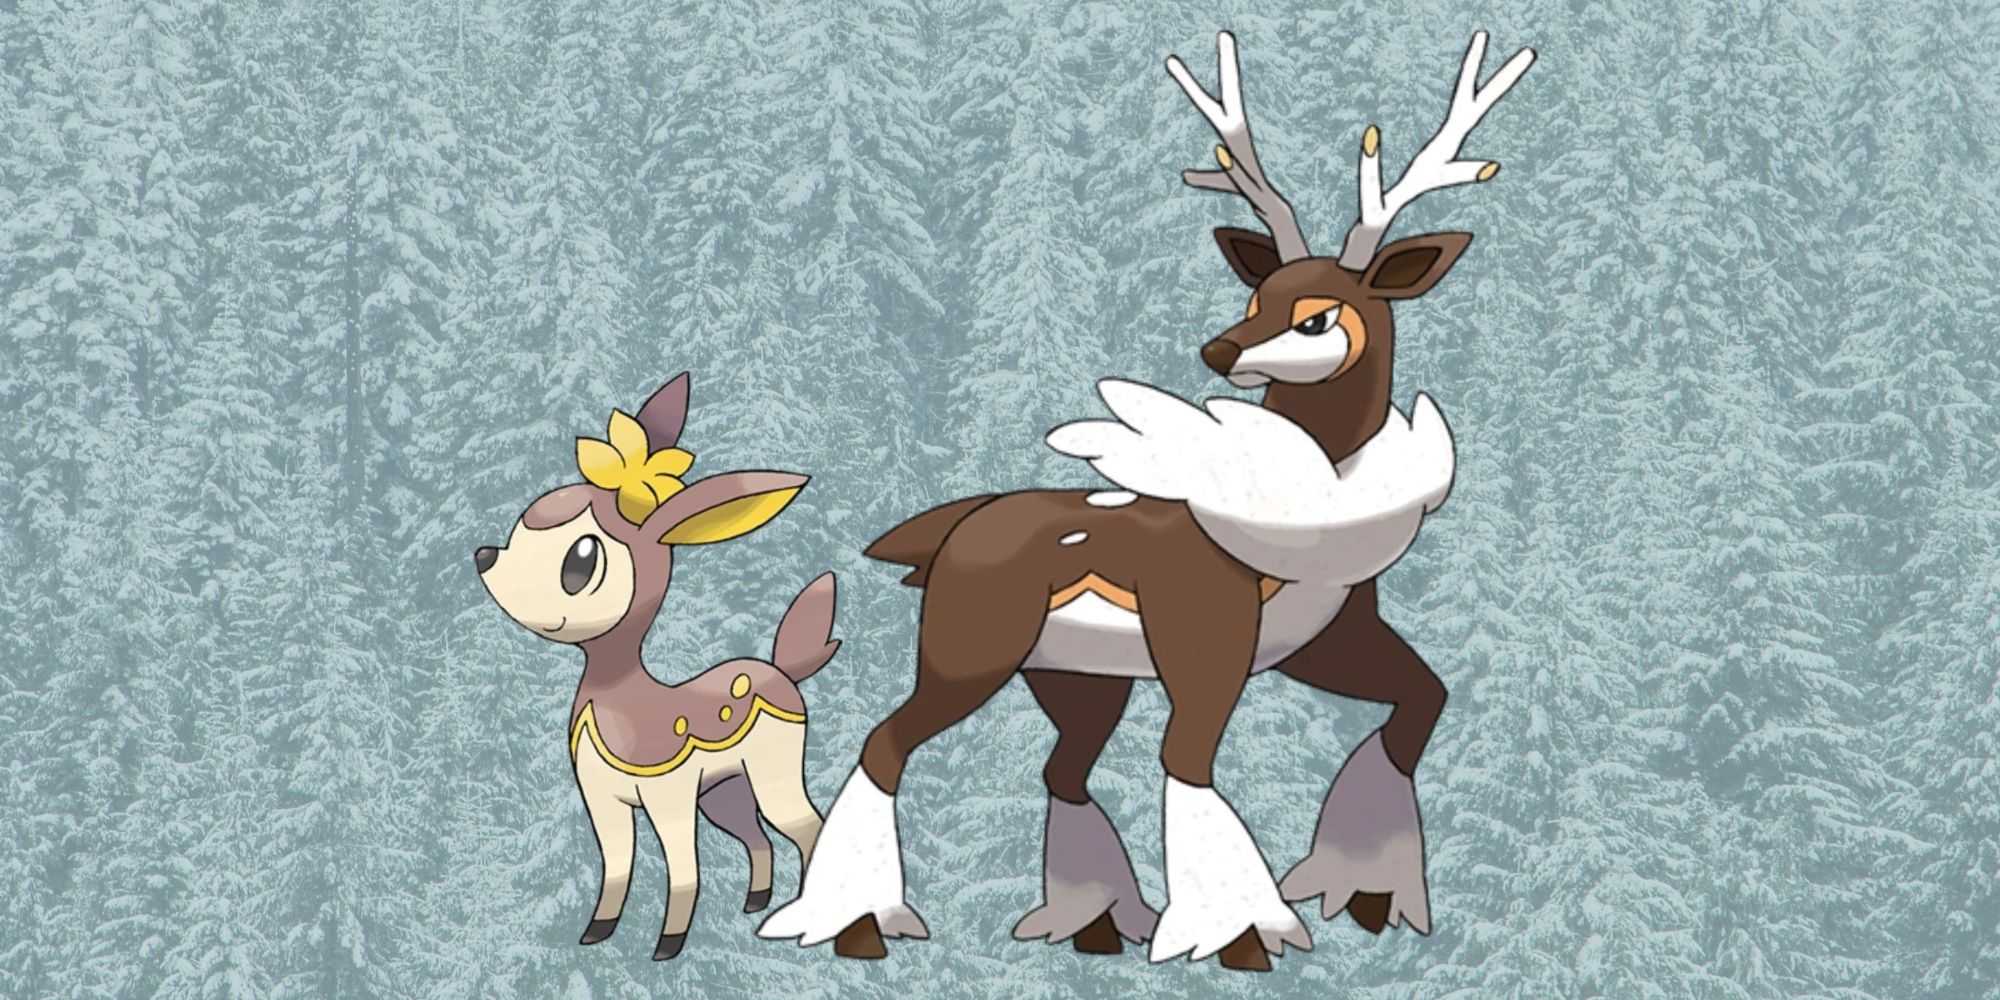 Pokémon hiver Deerling Sawsbuck forme hivernale